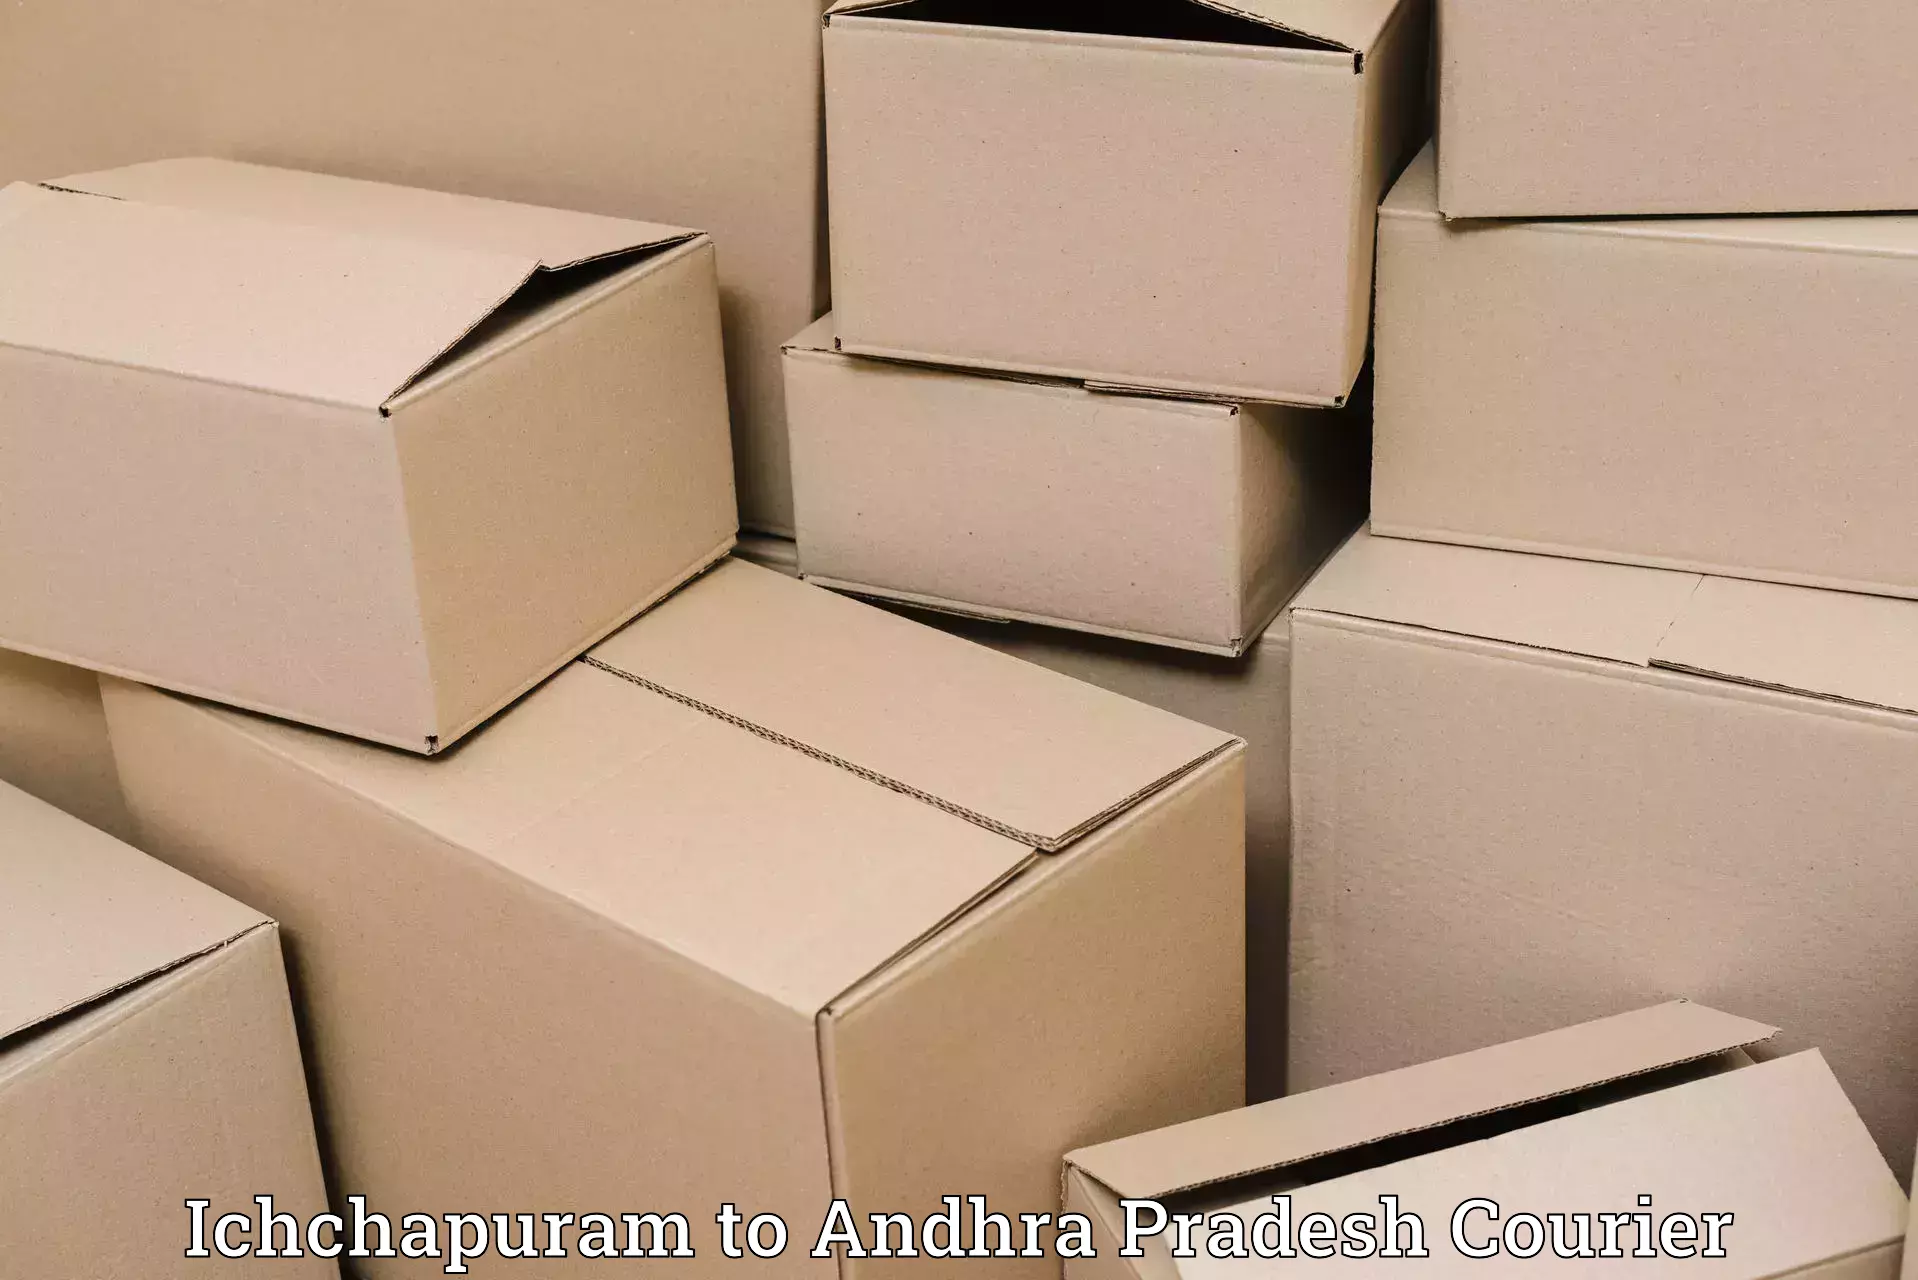 Quick courier services Ichchapuram to Annavaram